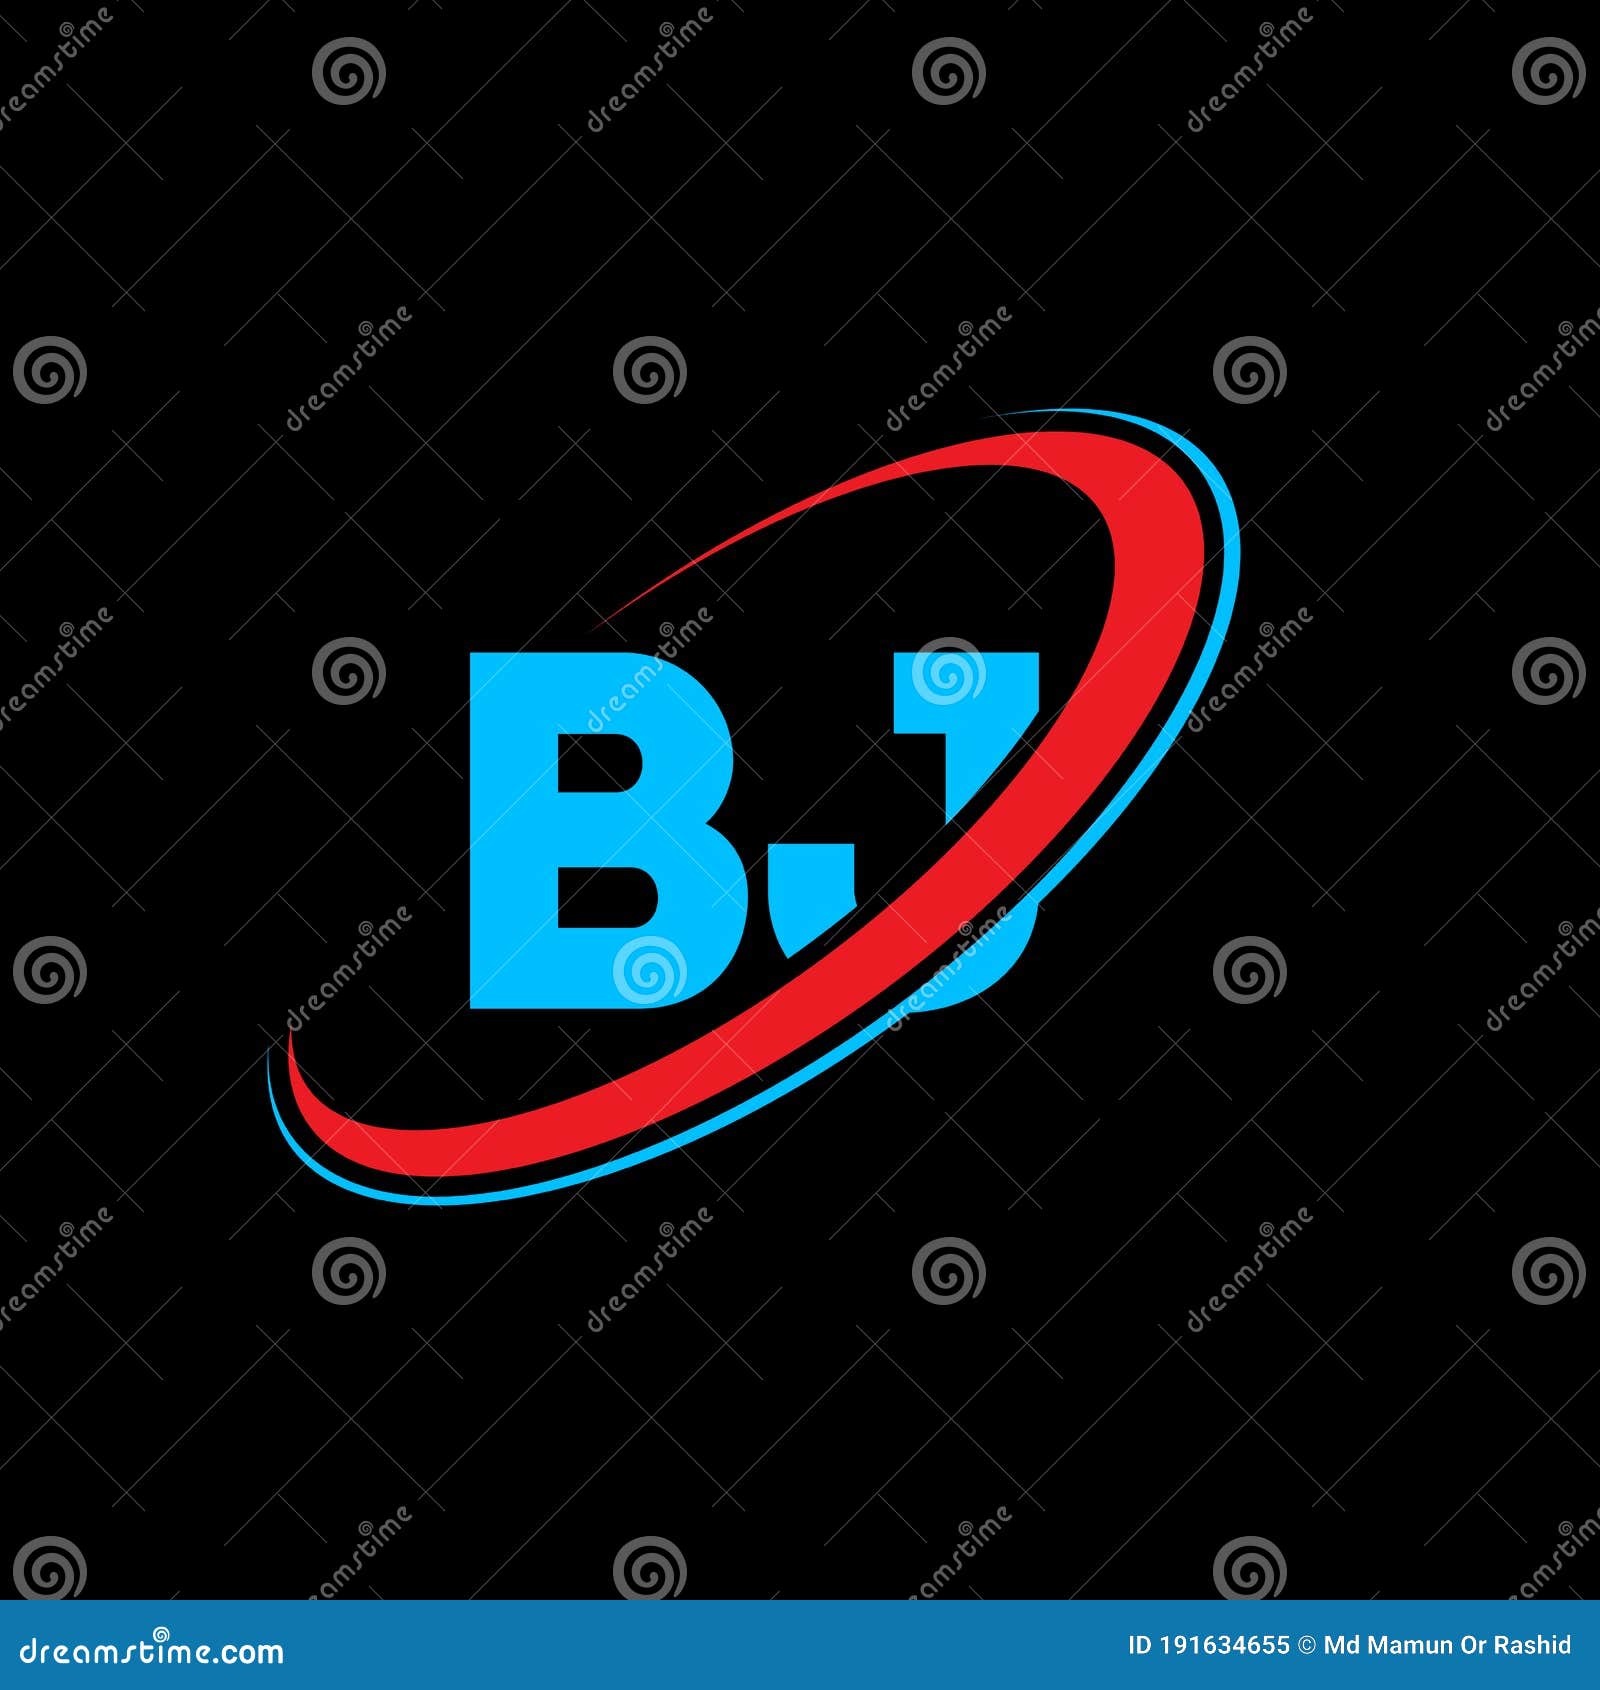 Initial Letter BJ Logo Template Design:: tasmeemME.com